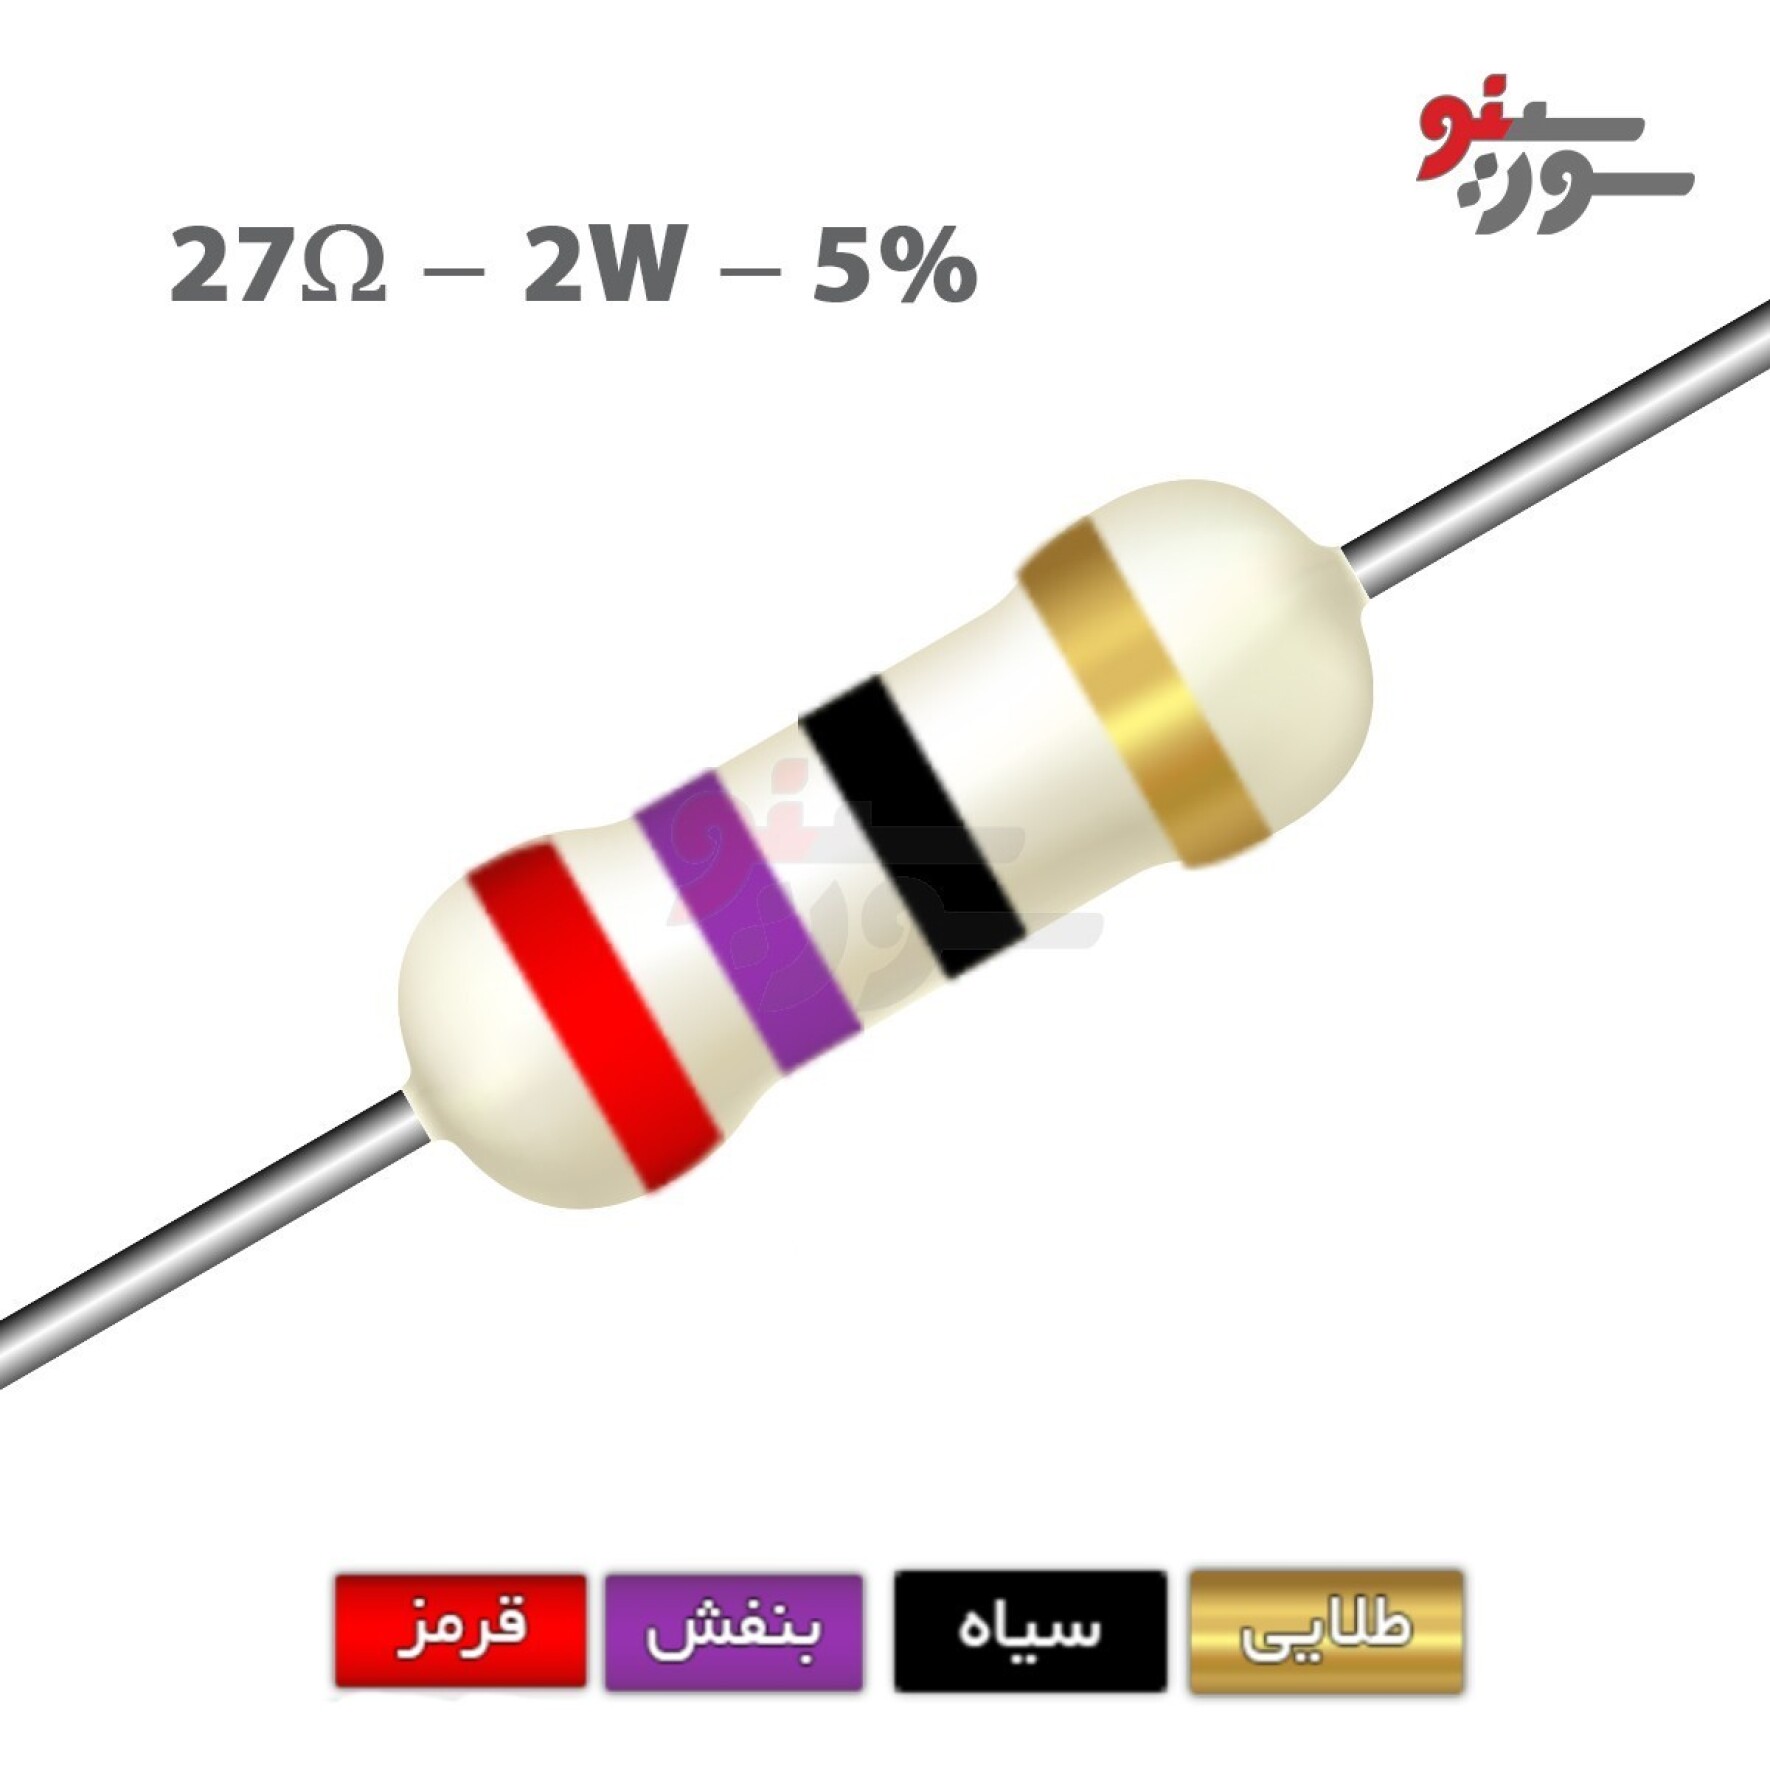 مقاومت 27 اهم 2 وات (27R-2W-5%)